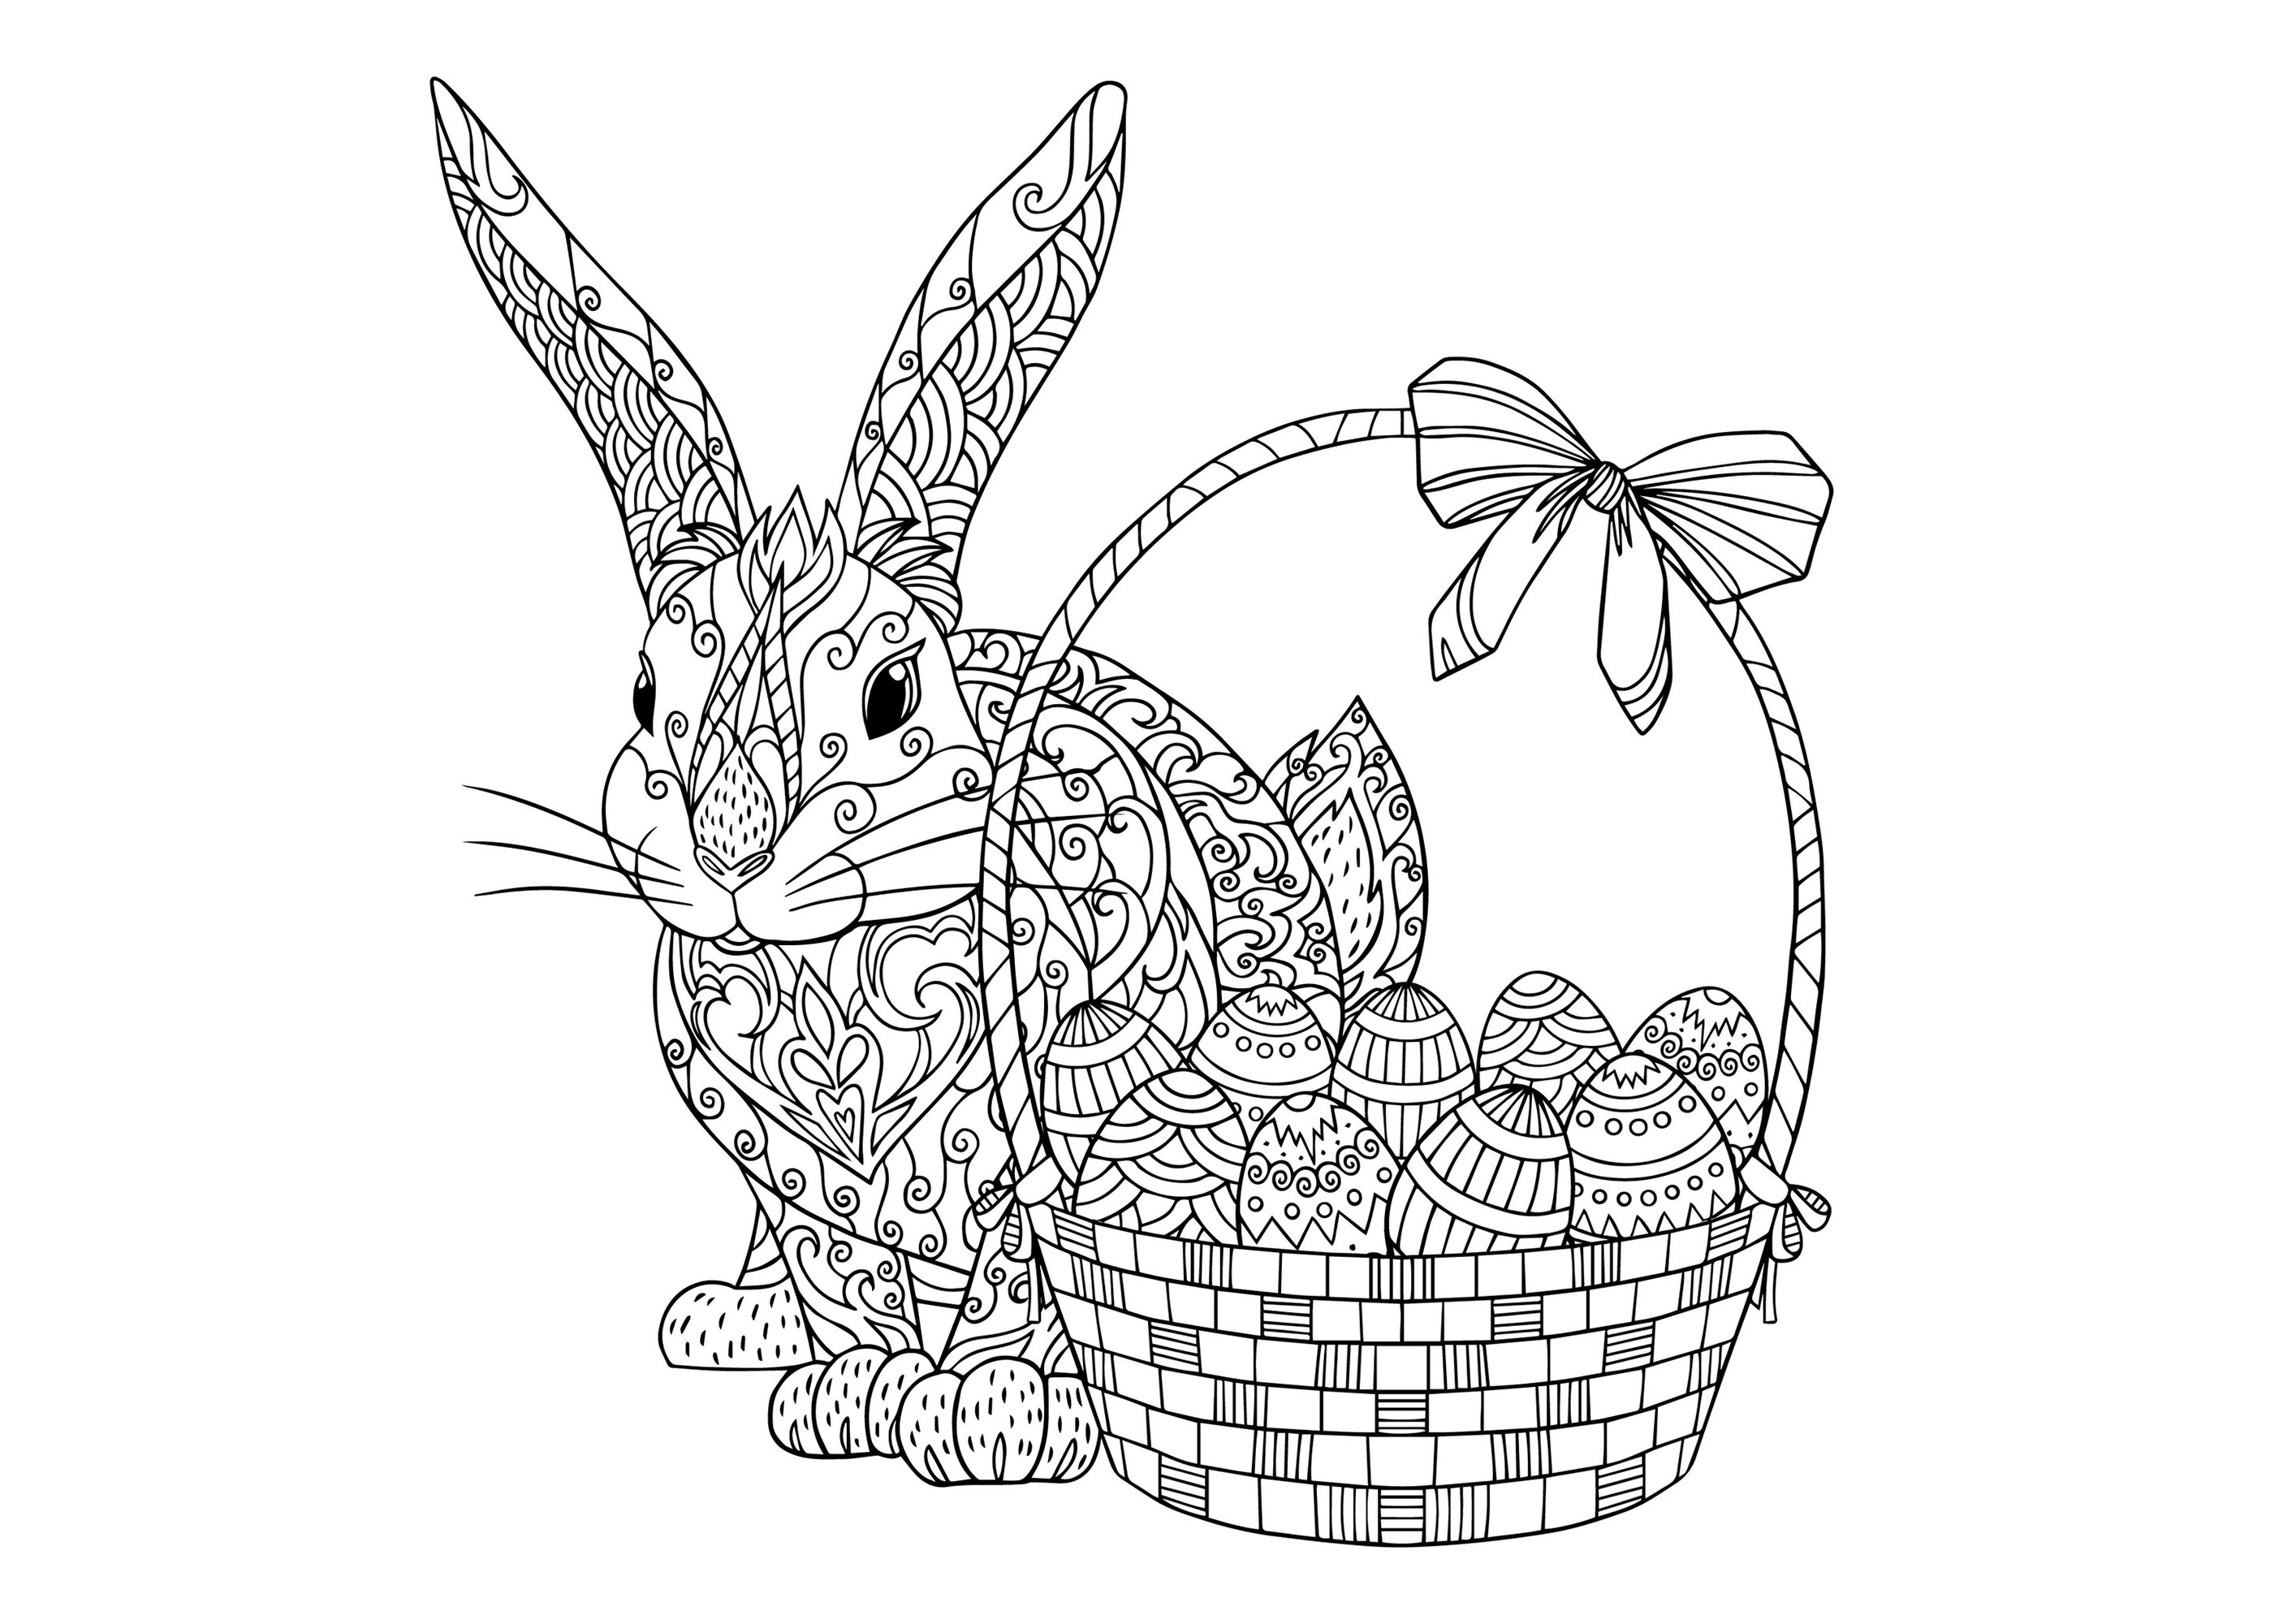 Conejo de Pascua con cesta con bonitos huevos de motivos sencillos y diversos, Artista : Daniellabelaya   Origen : 123rf